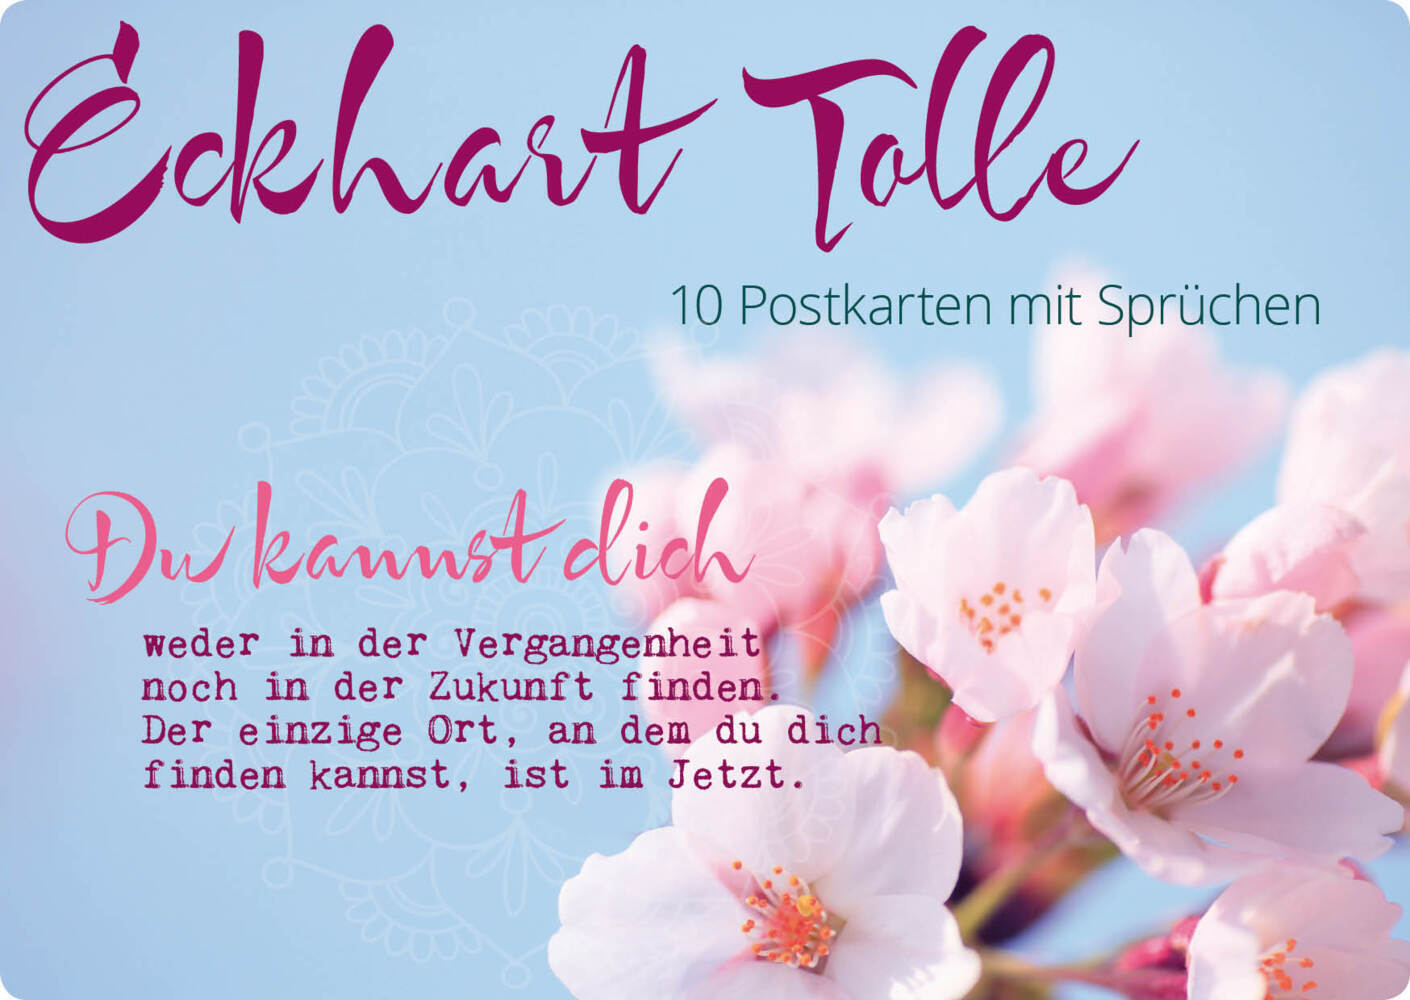 Cover: 4260398510949 | Eckhart Tolle, 10 Postkarten mit Sprüchen | Eckhart Tolle | SET | 2018